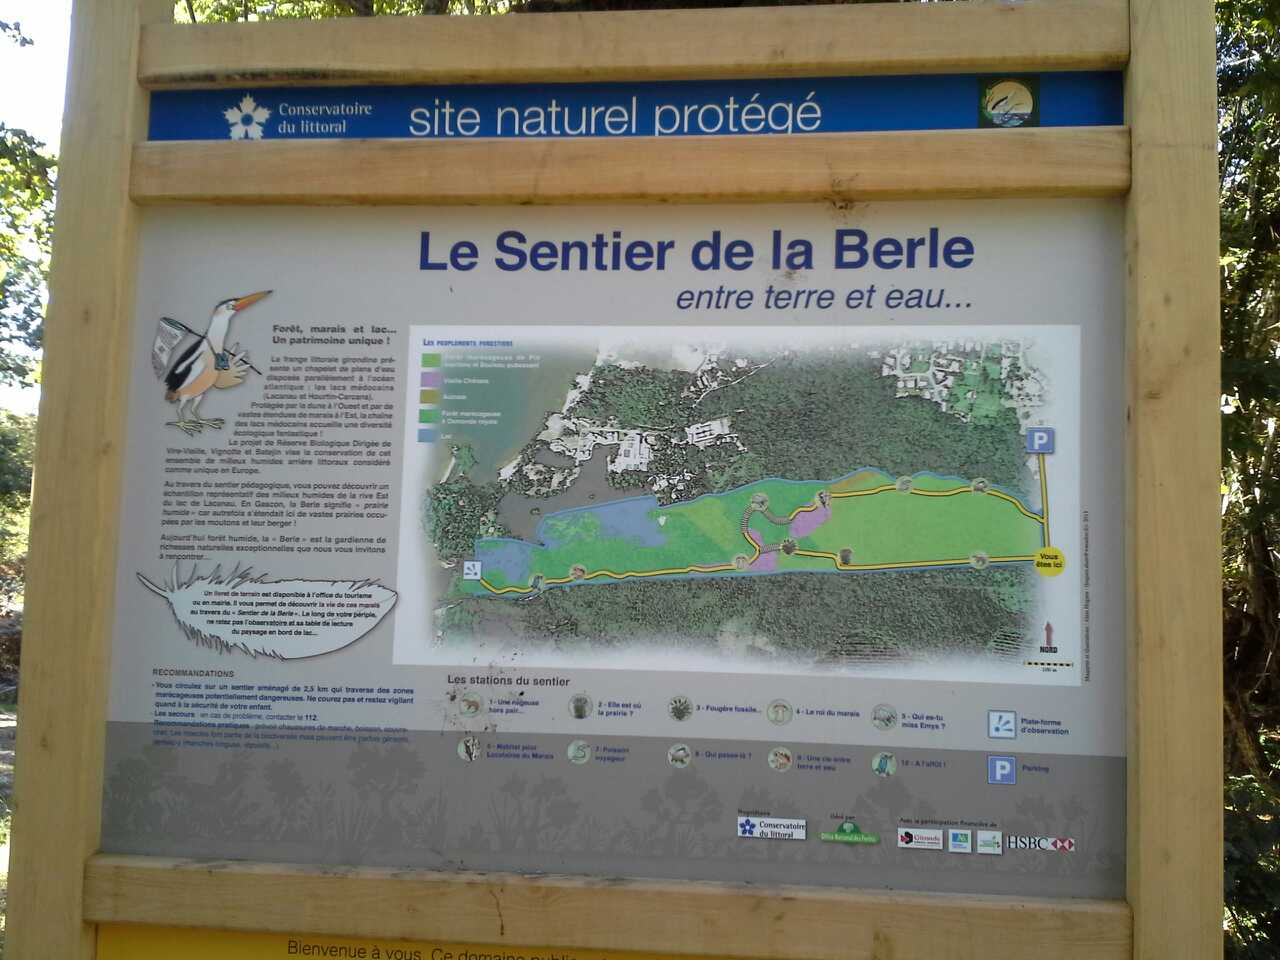 The Berle trail: a naturally fun trail!